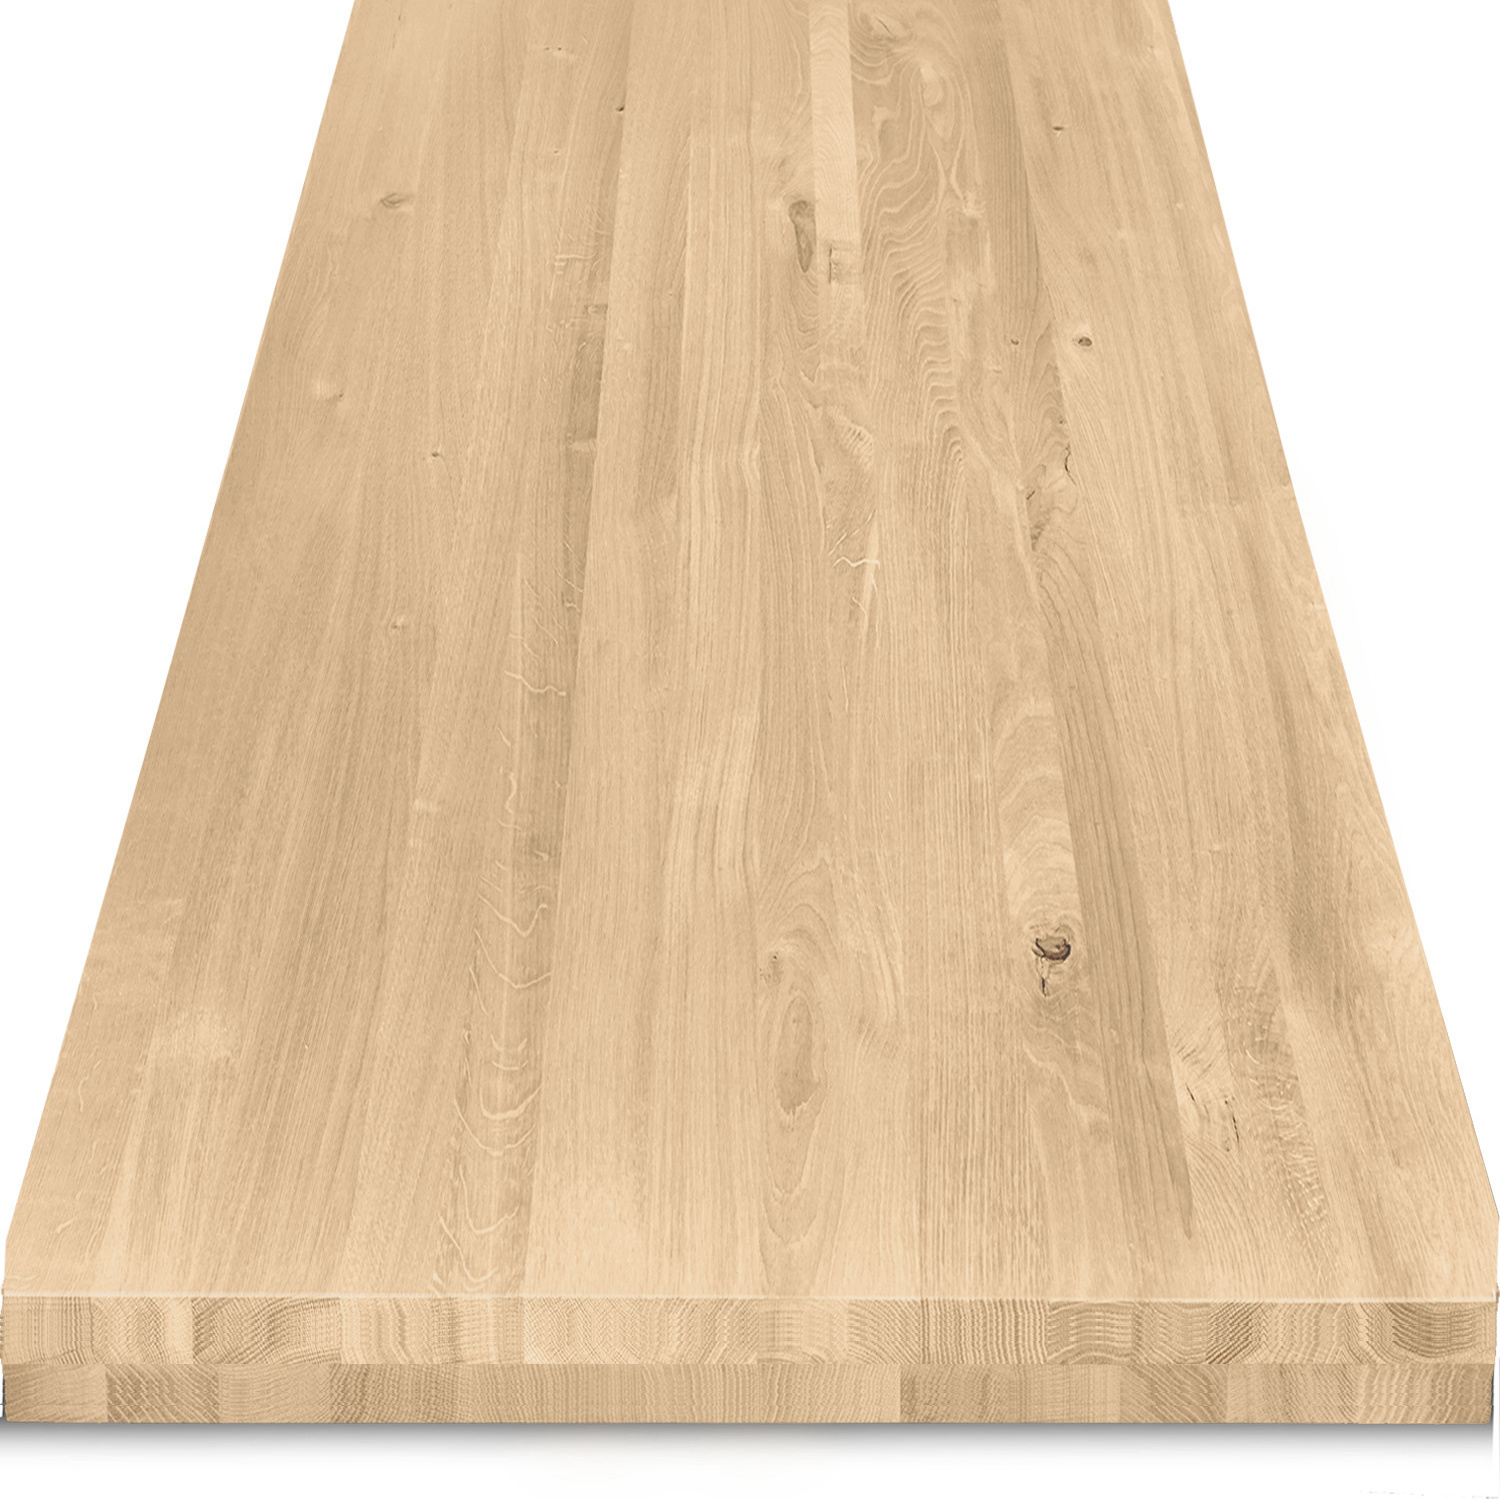  Tischplatte Eiche nach Maß - 8 cm dick (2-lagig) - Eichenholz rustikal - Eiche Tischplatte massiv - verleimt & künstlich getrocknet (HF 8-12%) - 50-120x50-300 cm